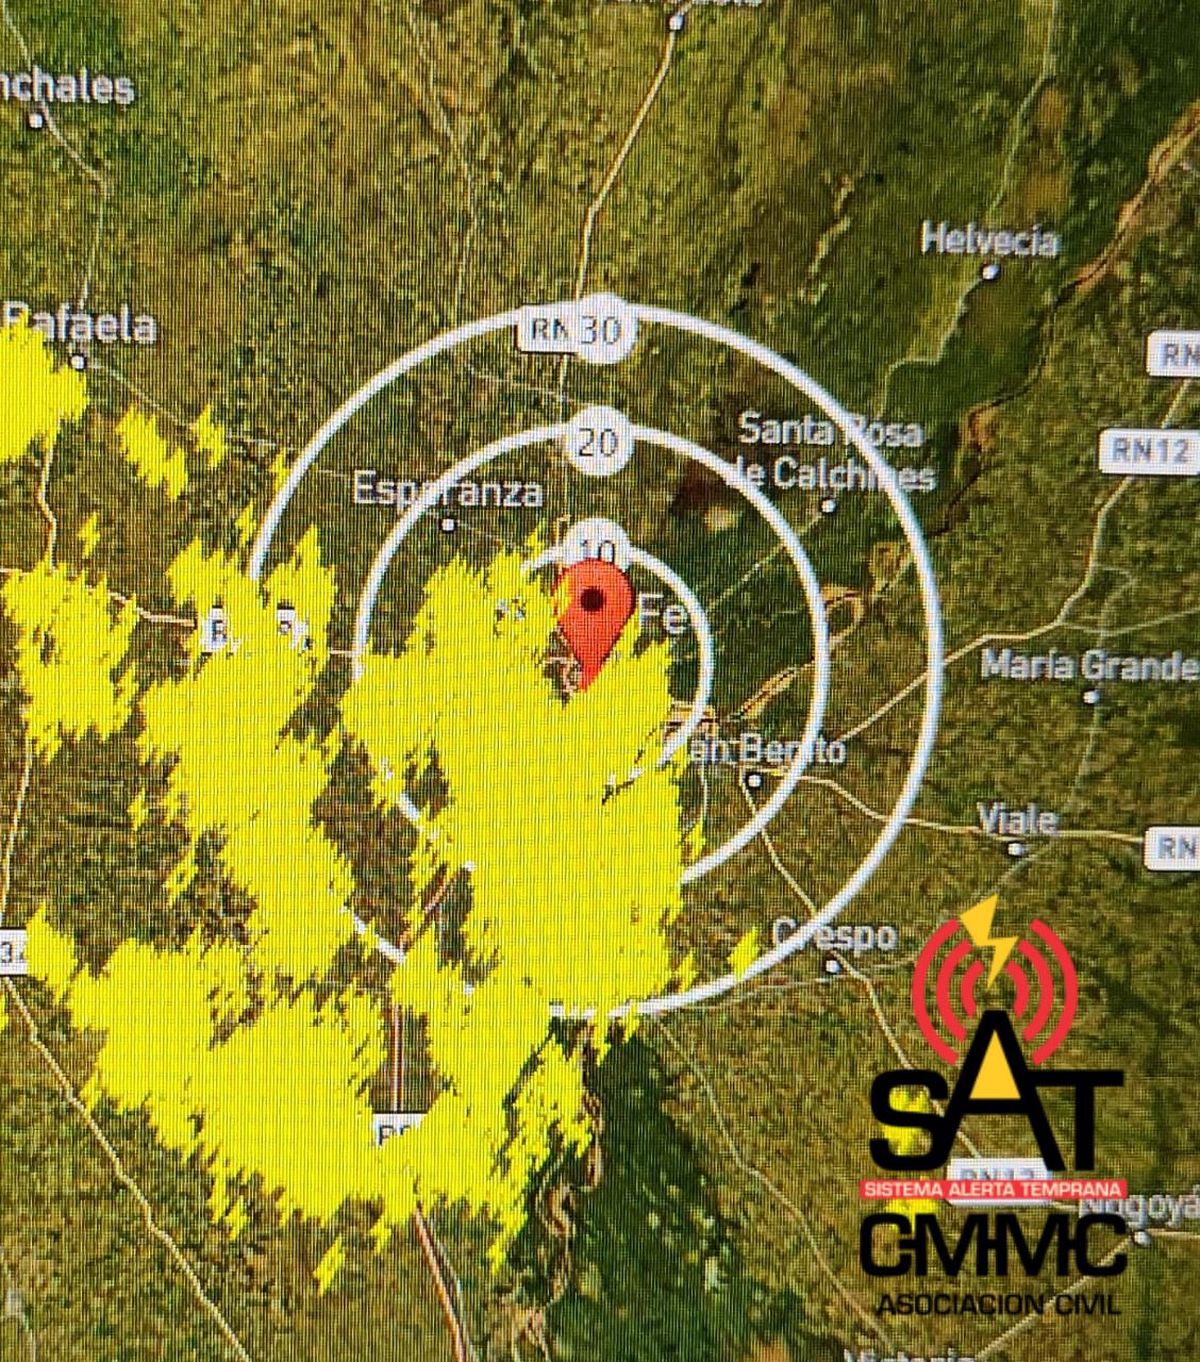 Imagen de las 16:05, del detector de largo alcance (ubicado al noroeste de Rosario, de 1.000 km de alcance) mostrando las descargas en los &uacute;ltimos 30 minutos. Se ven rayos amarillos en algunos lugares amontonados.